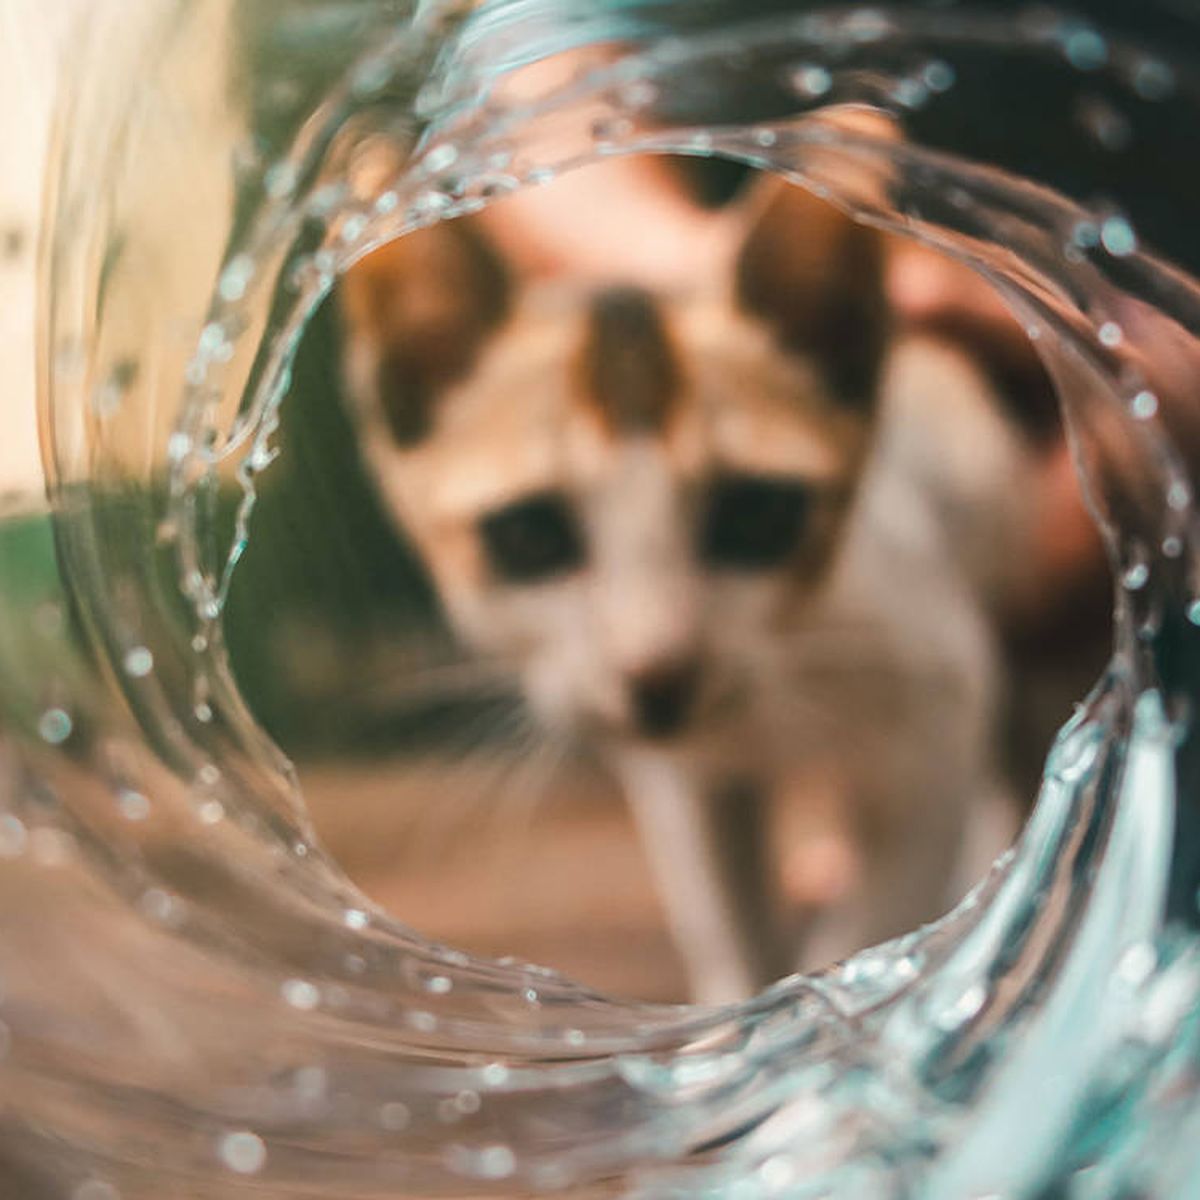 Lo mejor para tu mascota! Agua fresca y filtrada para tu gato gracias a  esta fuente de agua rebajada un 35%